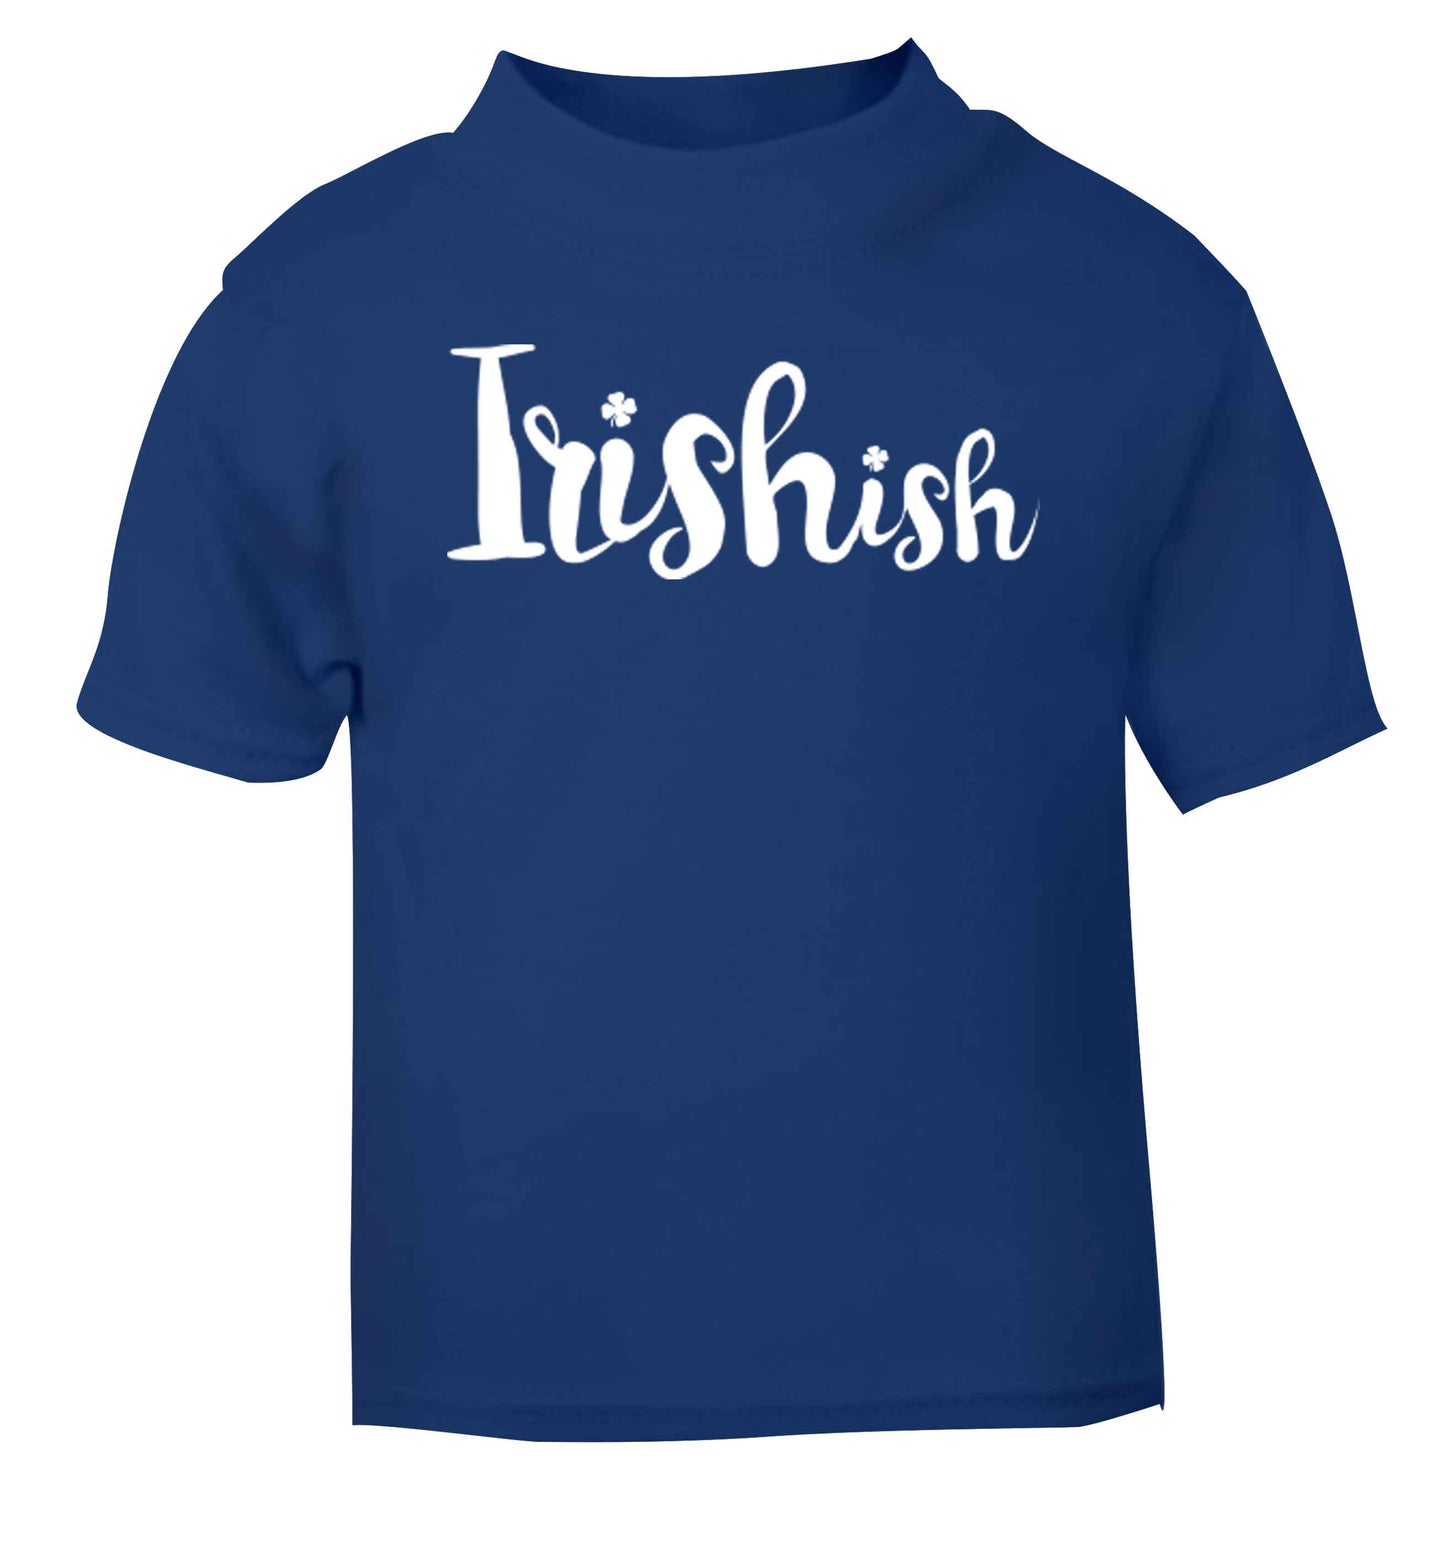 Irishish blue baby toddler Tshirt 2 Years